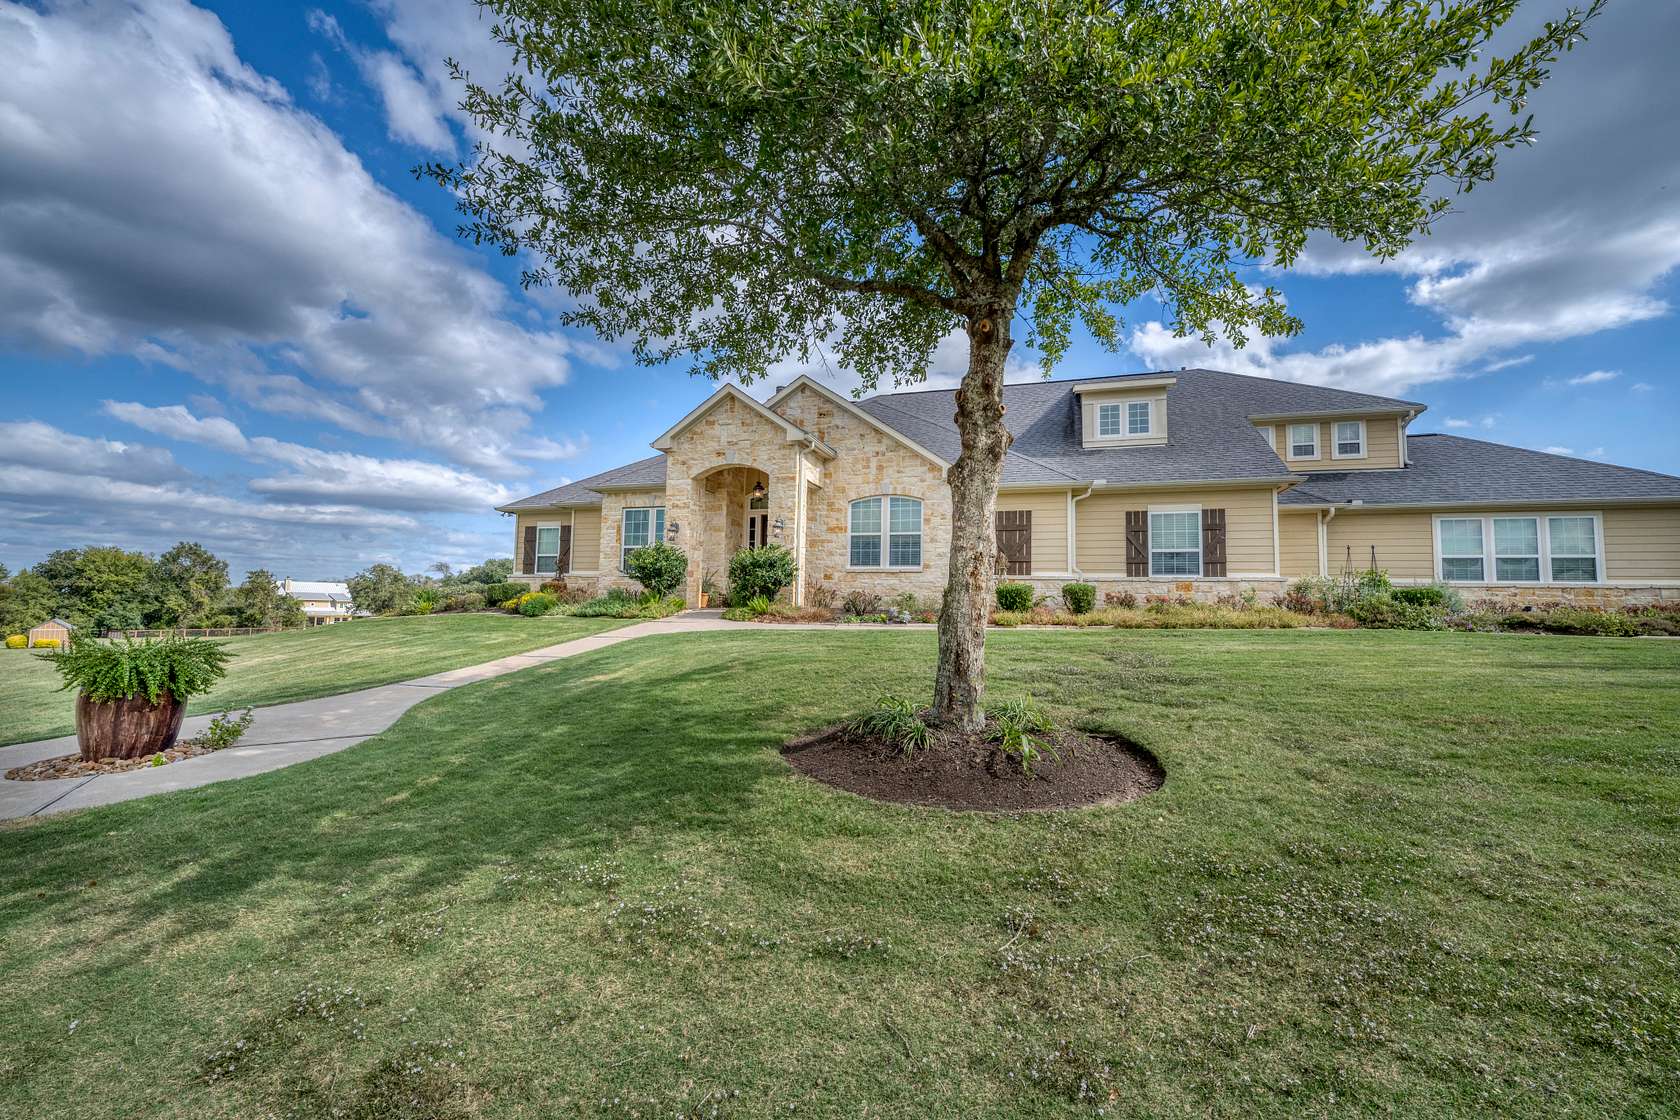 1.205 Acres of Residential Land for Sale in Brenham, Texas